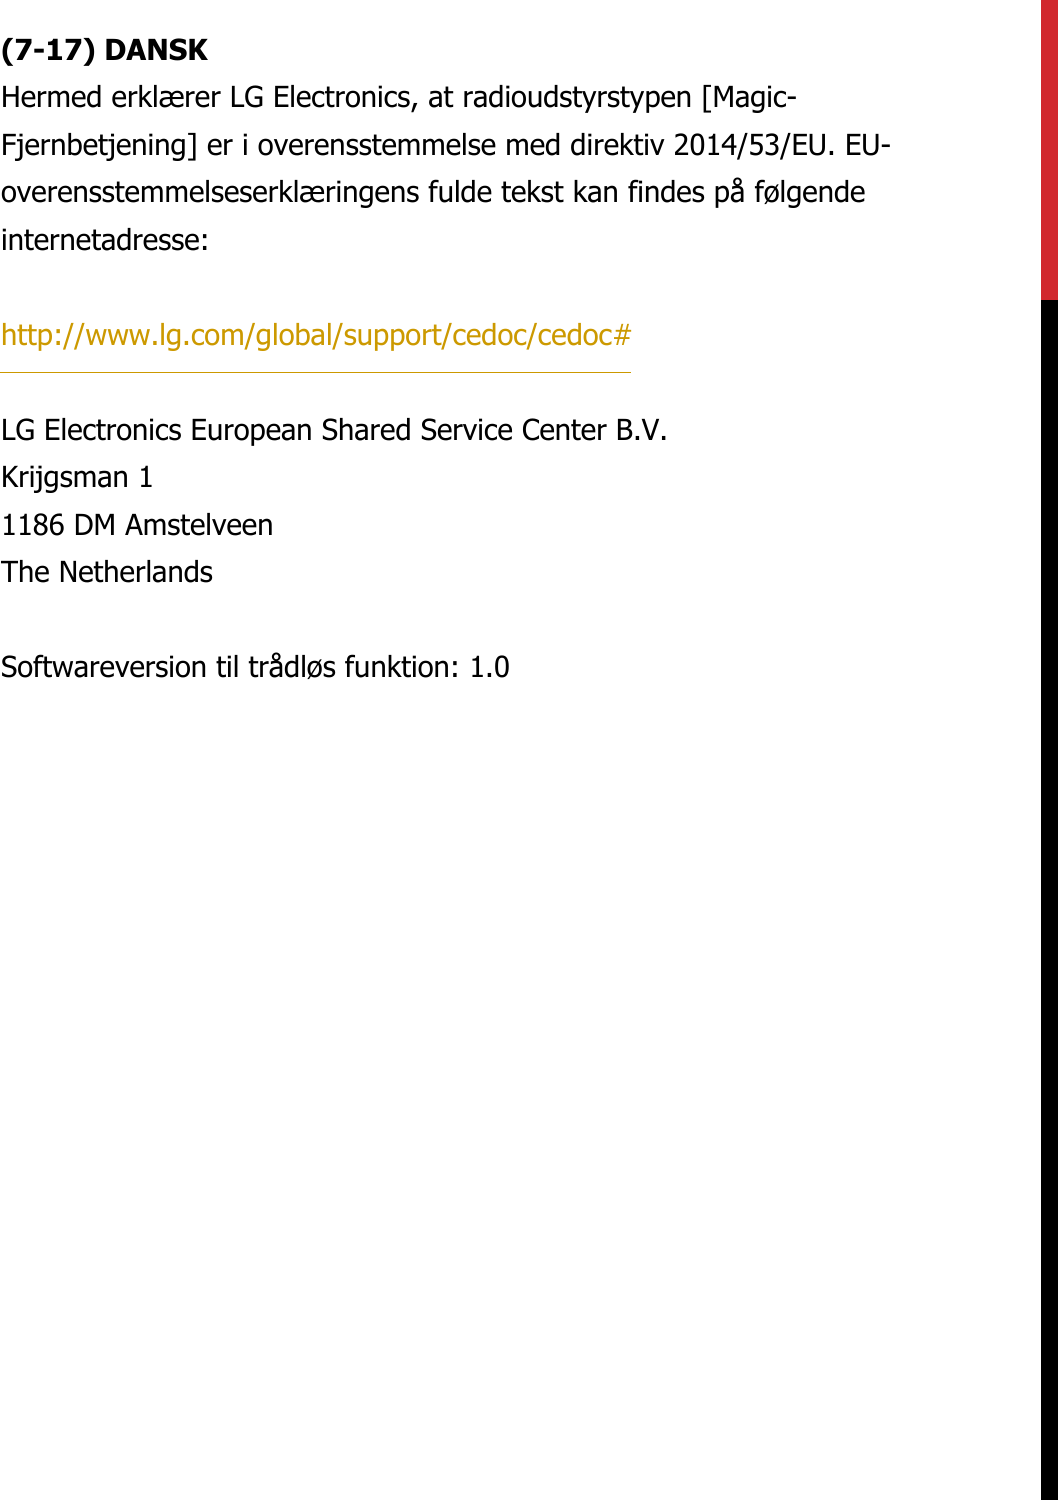 (7-17) DANSKHermed erklærer LG Electronics, at radioudstyrstypen [Magic-Fjernbetjening] er i overensstemmelse med direktiv 2014/53/EU. EU-overensstemmelseserklæringens fulde tekst kan findes på følgende internetadresse:   http://www.lg.com/global/support/cedoc/cedoc#   LG Electronics European Shared Service Center B.V.  Krijgsman 1  1186 DM Amstelveen  The Netherlands   Softwareversion til trådløs funktion: 1.0